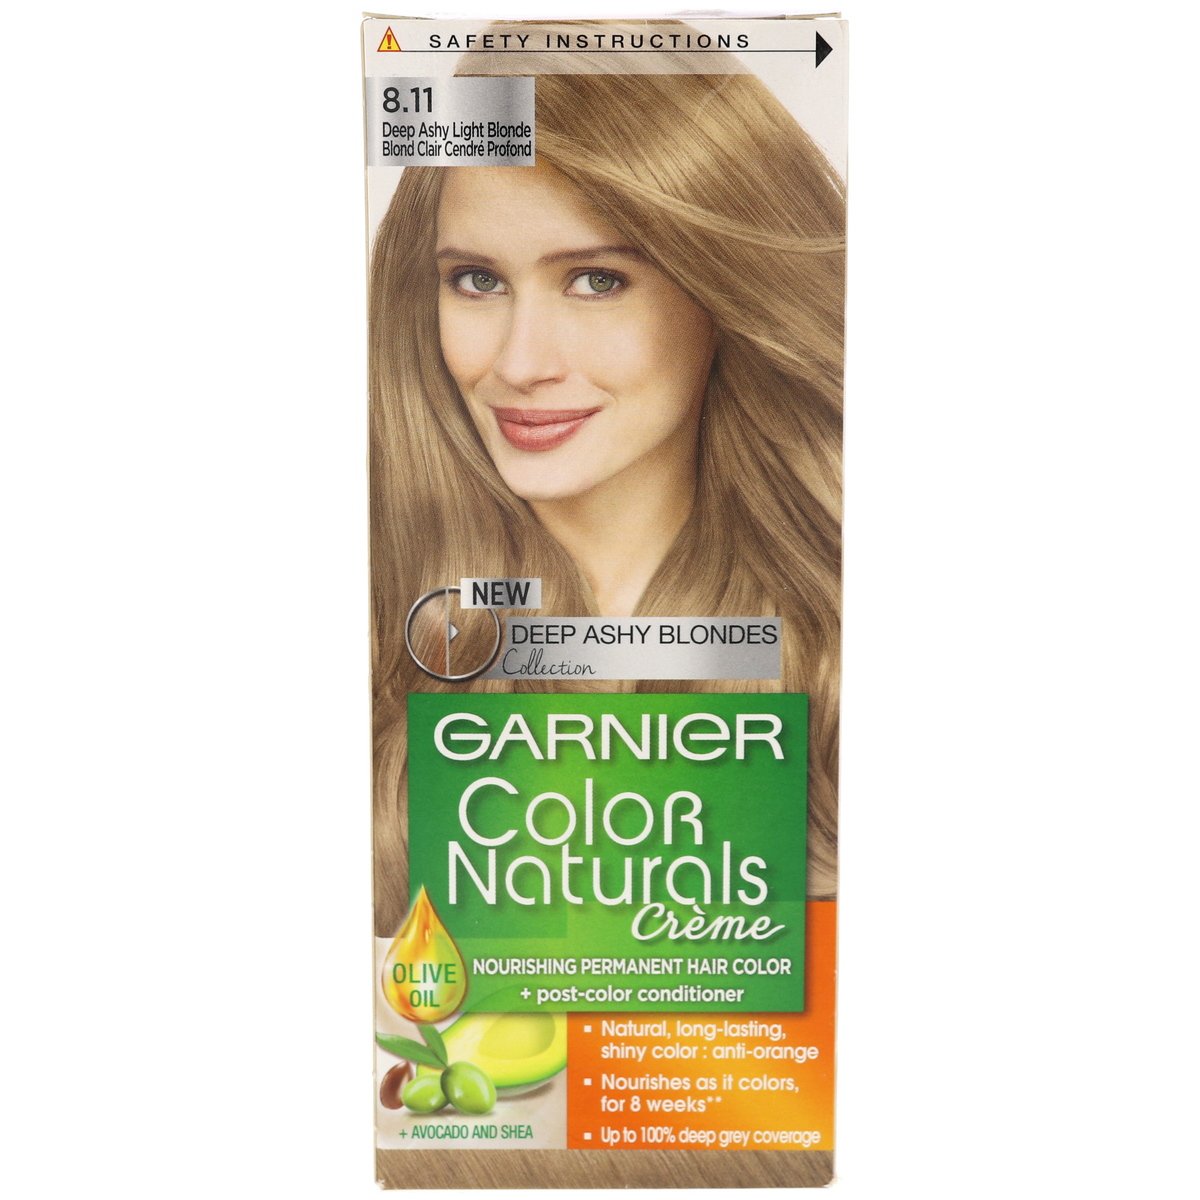 Garnier Color Naturals 8.11 Deep Ashy Light Blonde 1 pkt